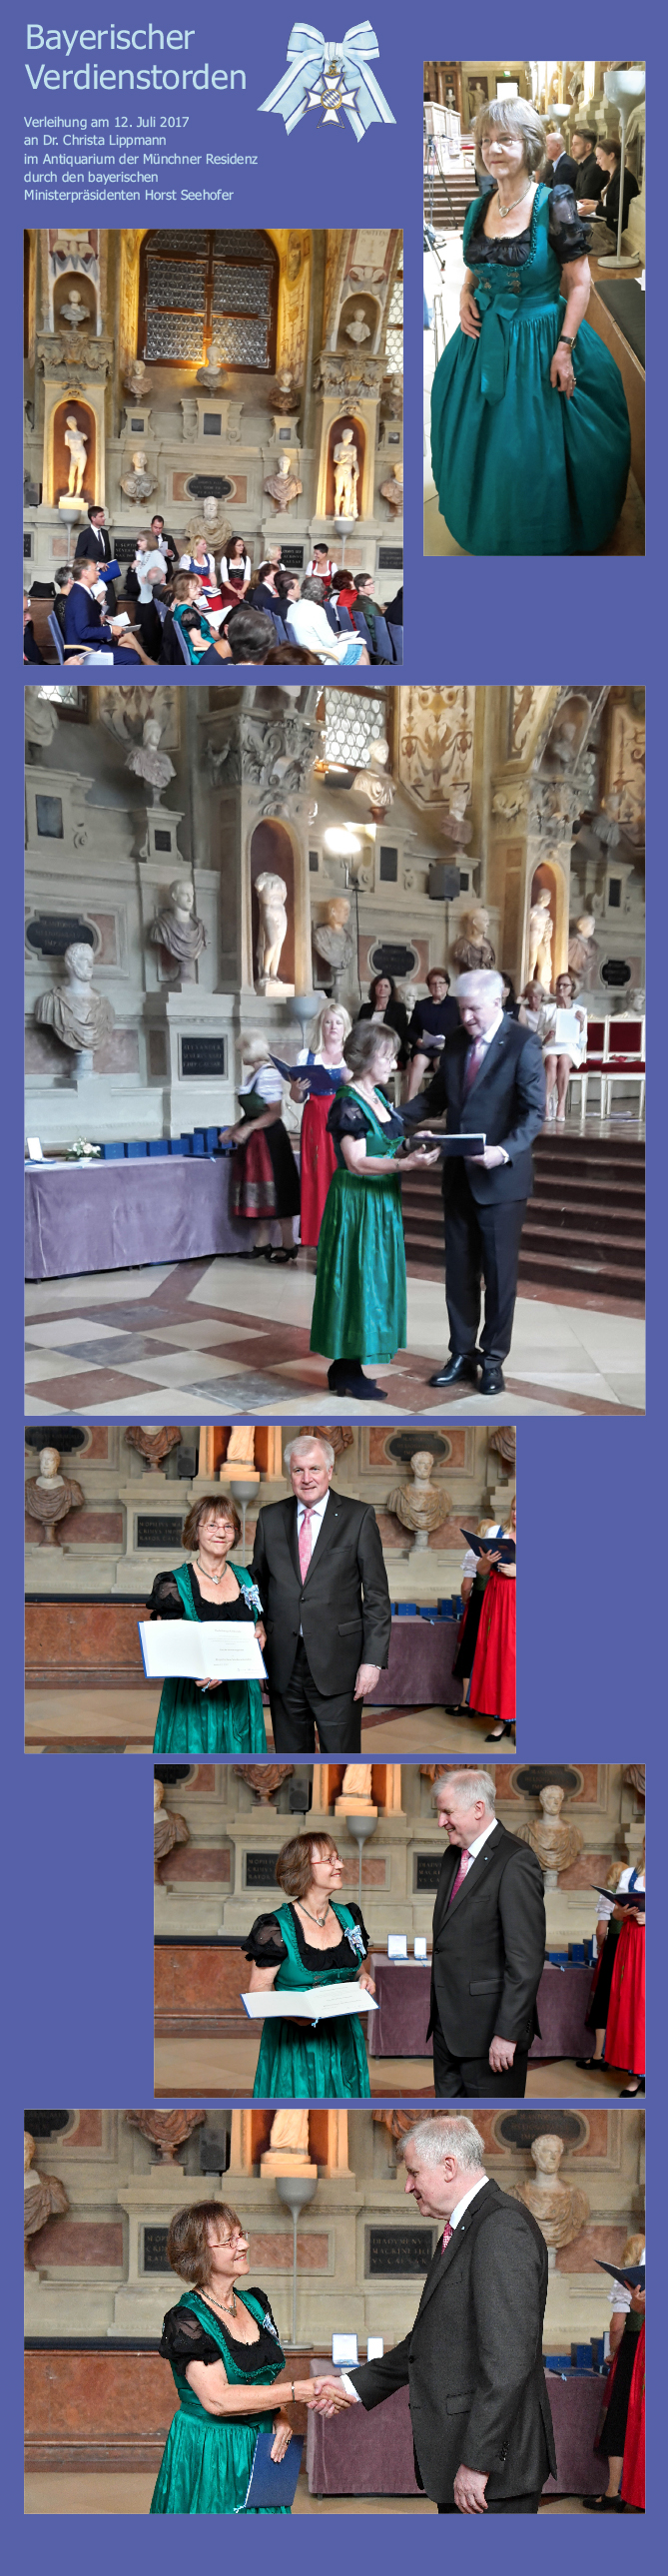 Bilder von der Verleihung des Bayerischen Verdienstordens an Dr. Christa Lippmann durch den Bayerischen Ministerpräsidenten Horst Seehofer